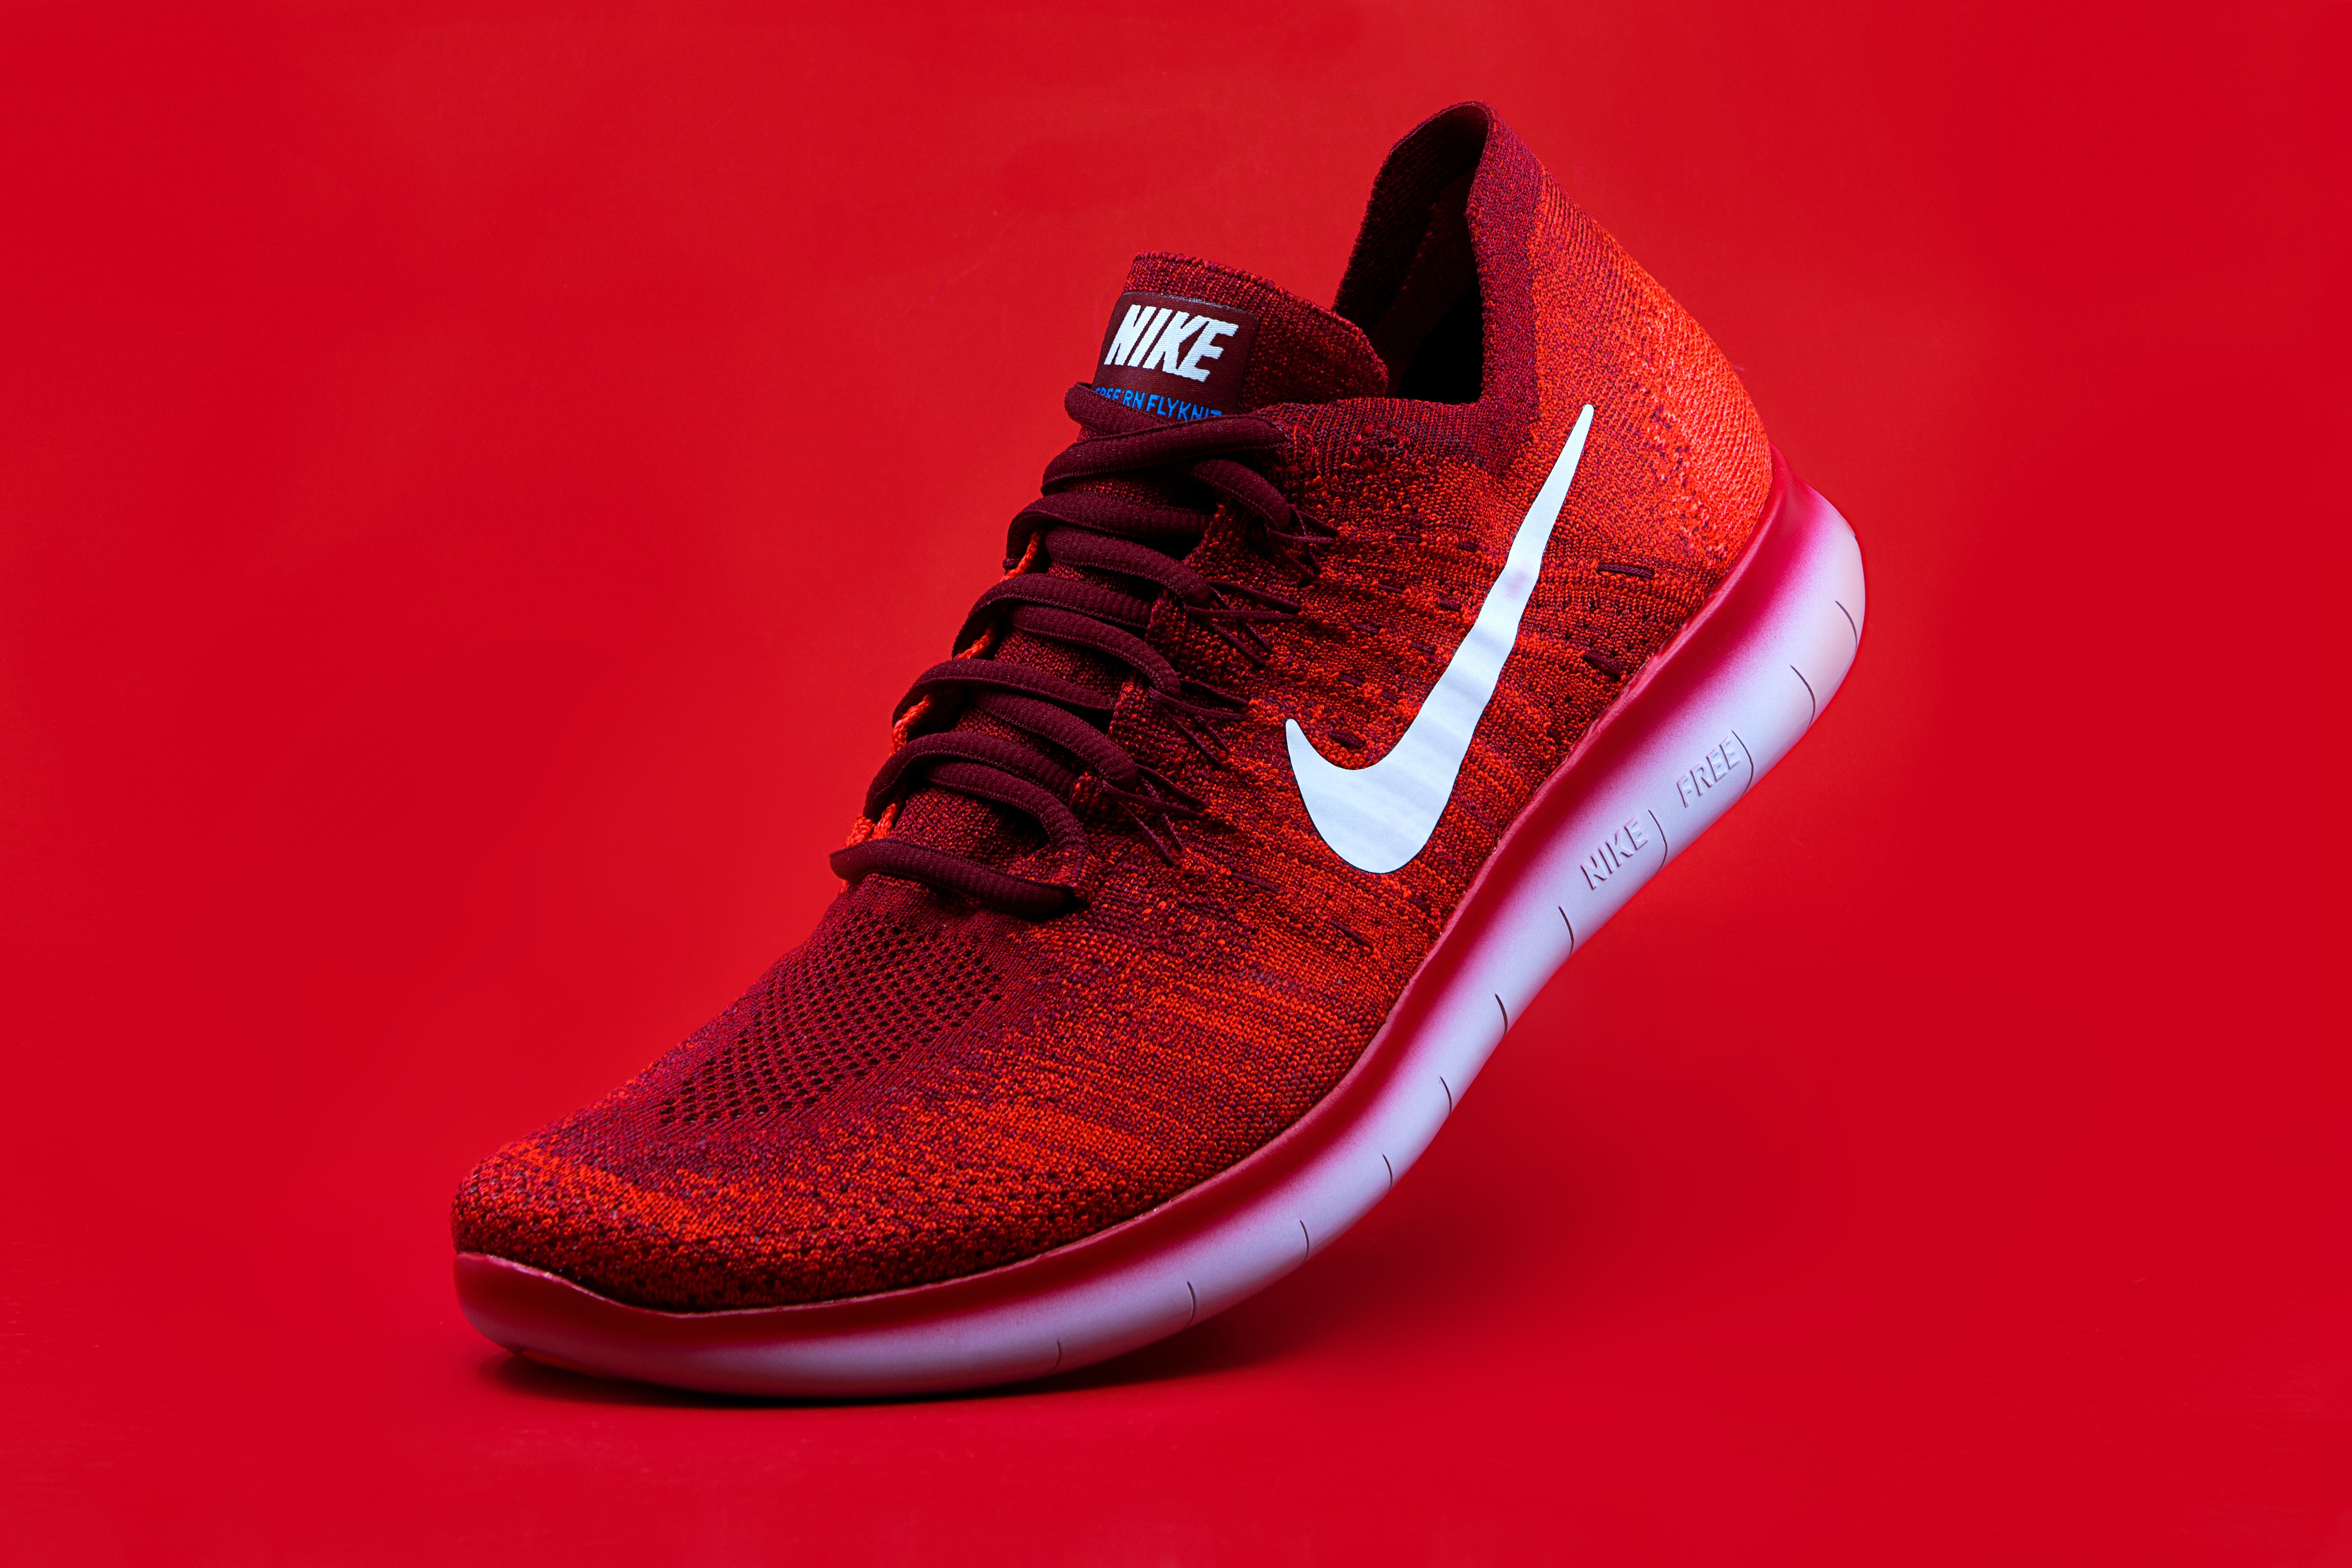 Giày Nike Trung Quốc có tốt không? Link web giày Nike chính hãng